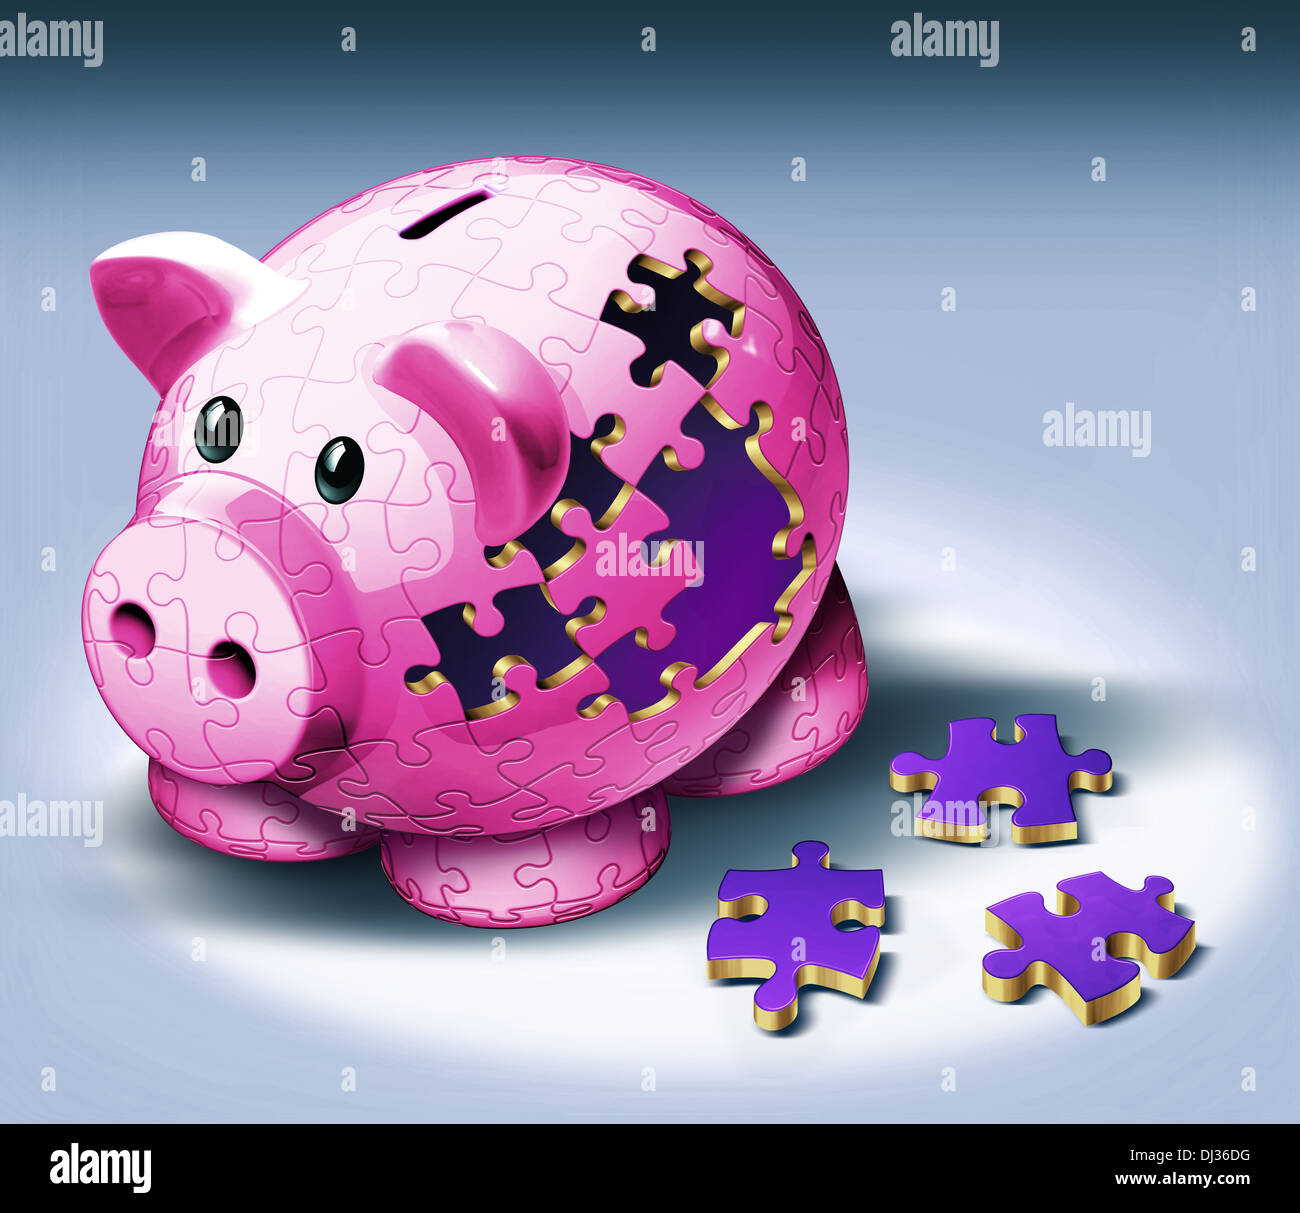 Anschauliches Bild der Puzzleteile vom Sparschwein für Zahlung von EMI gefallen Stockfoto